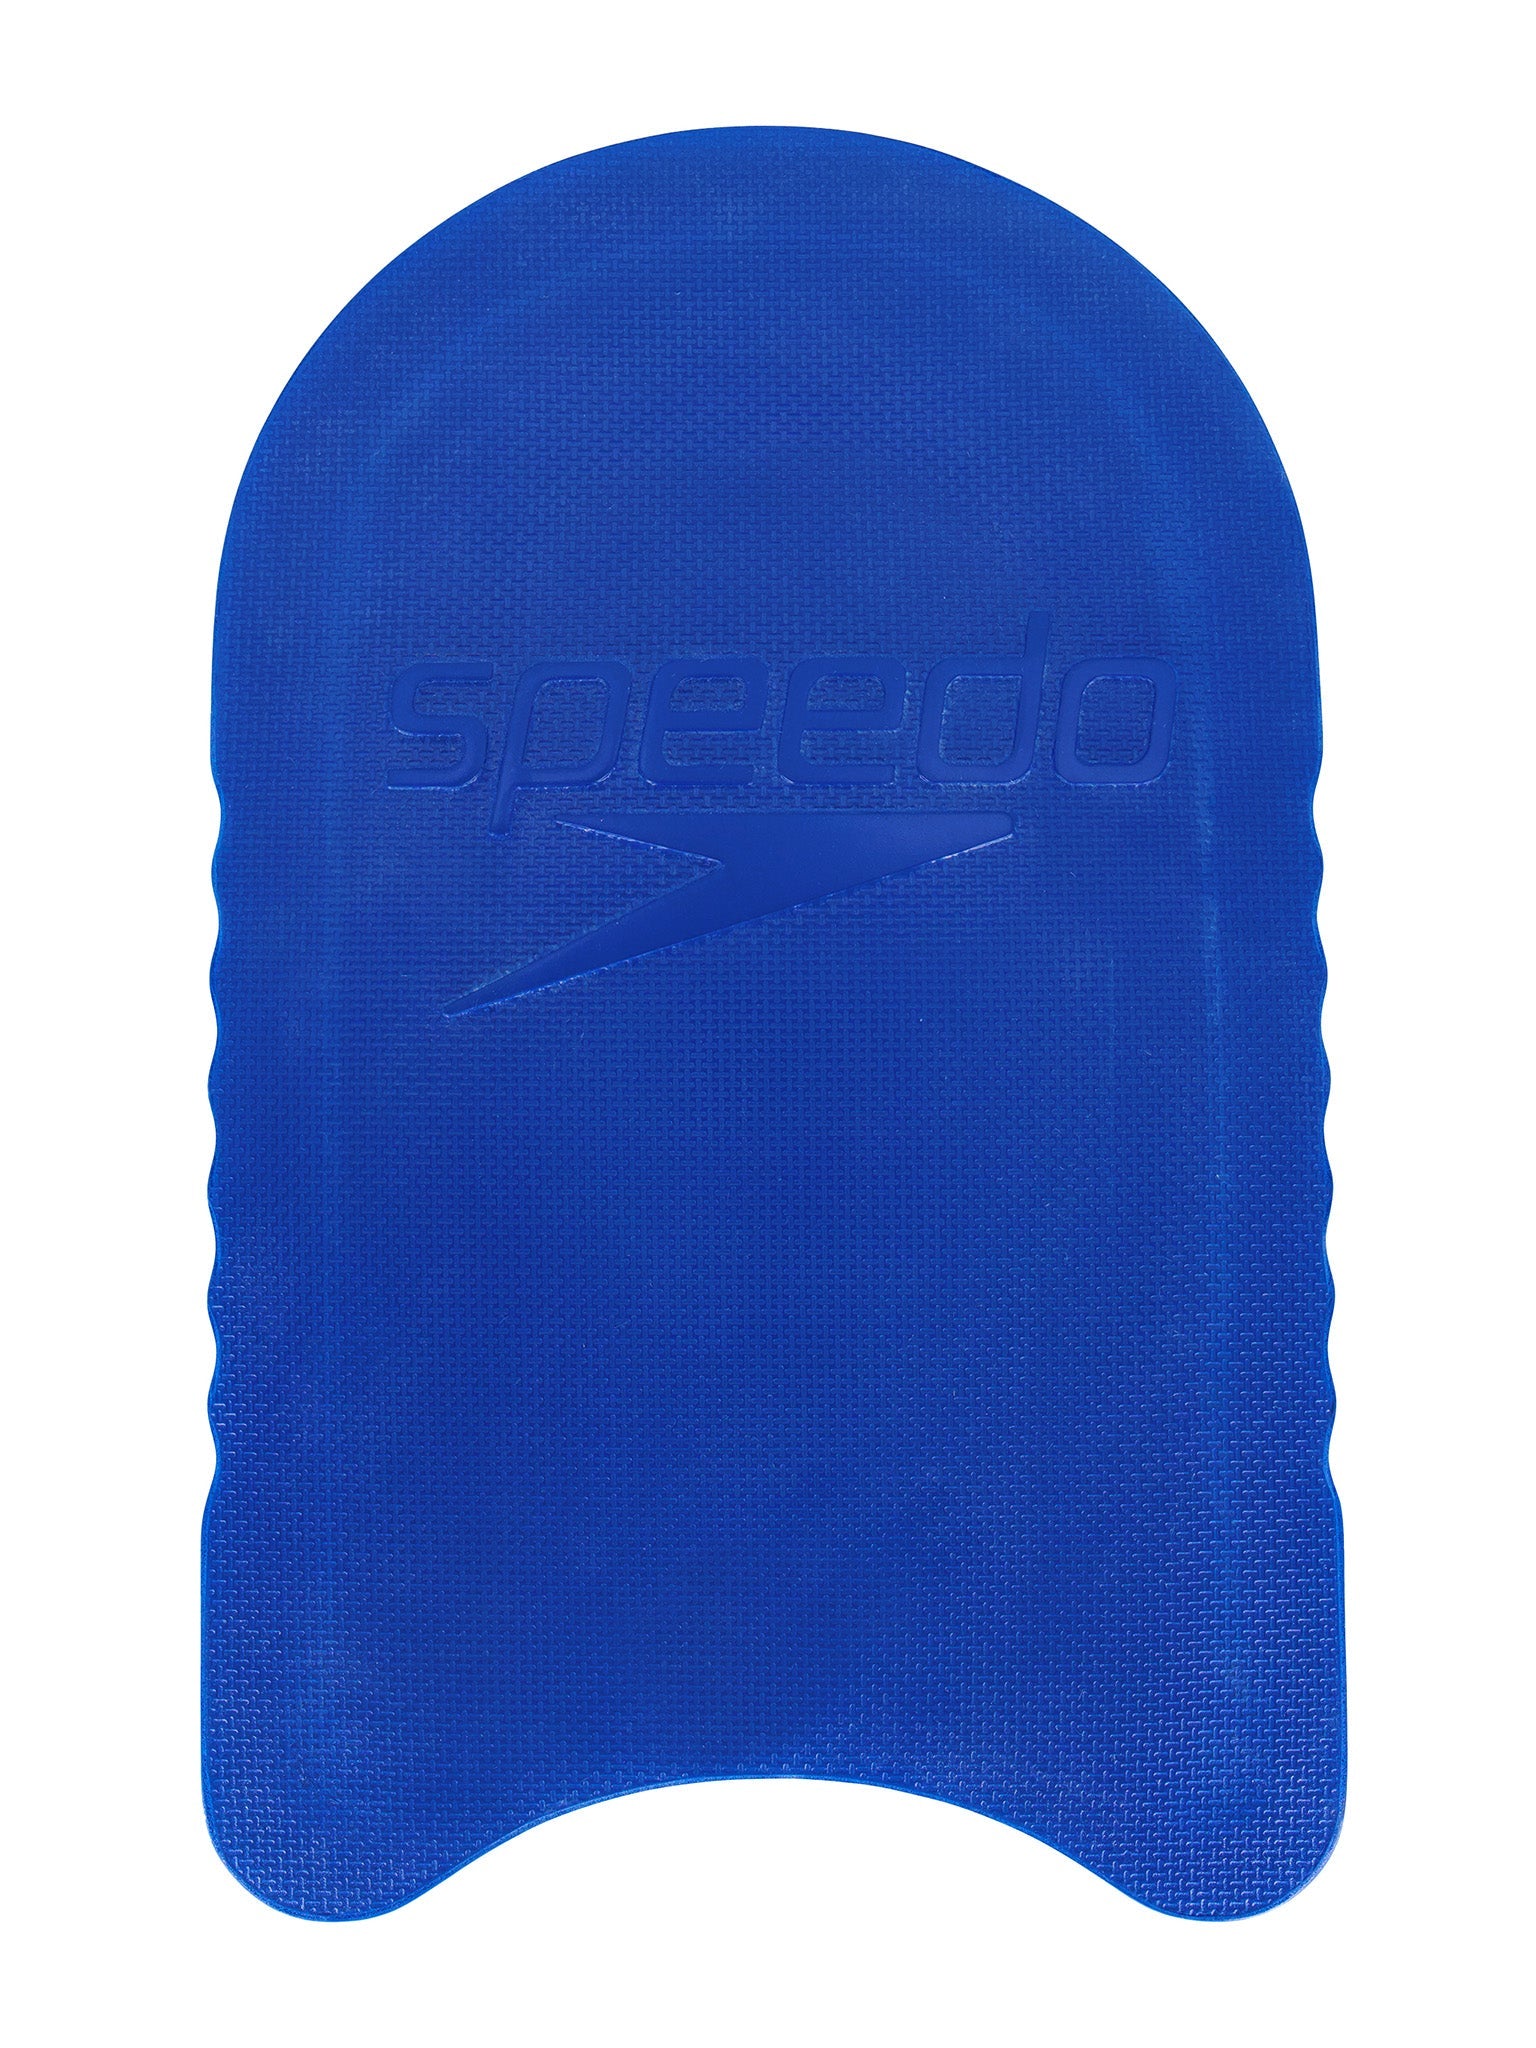 Speedo Kickboard - Blue